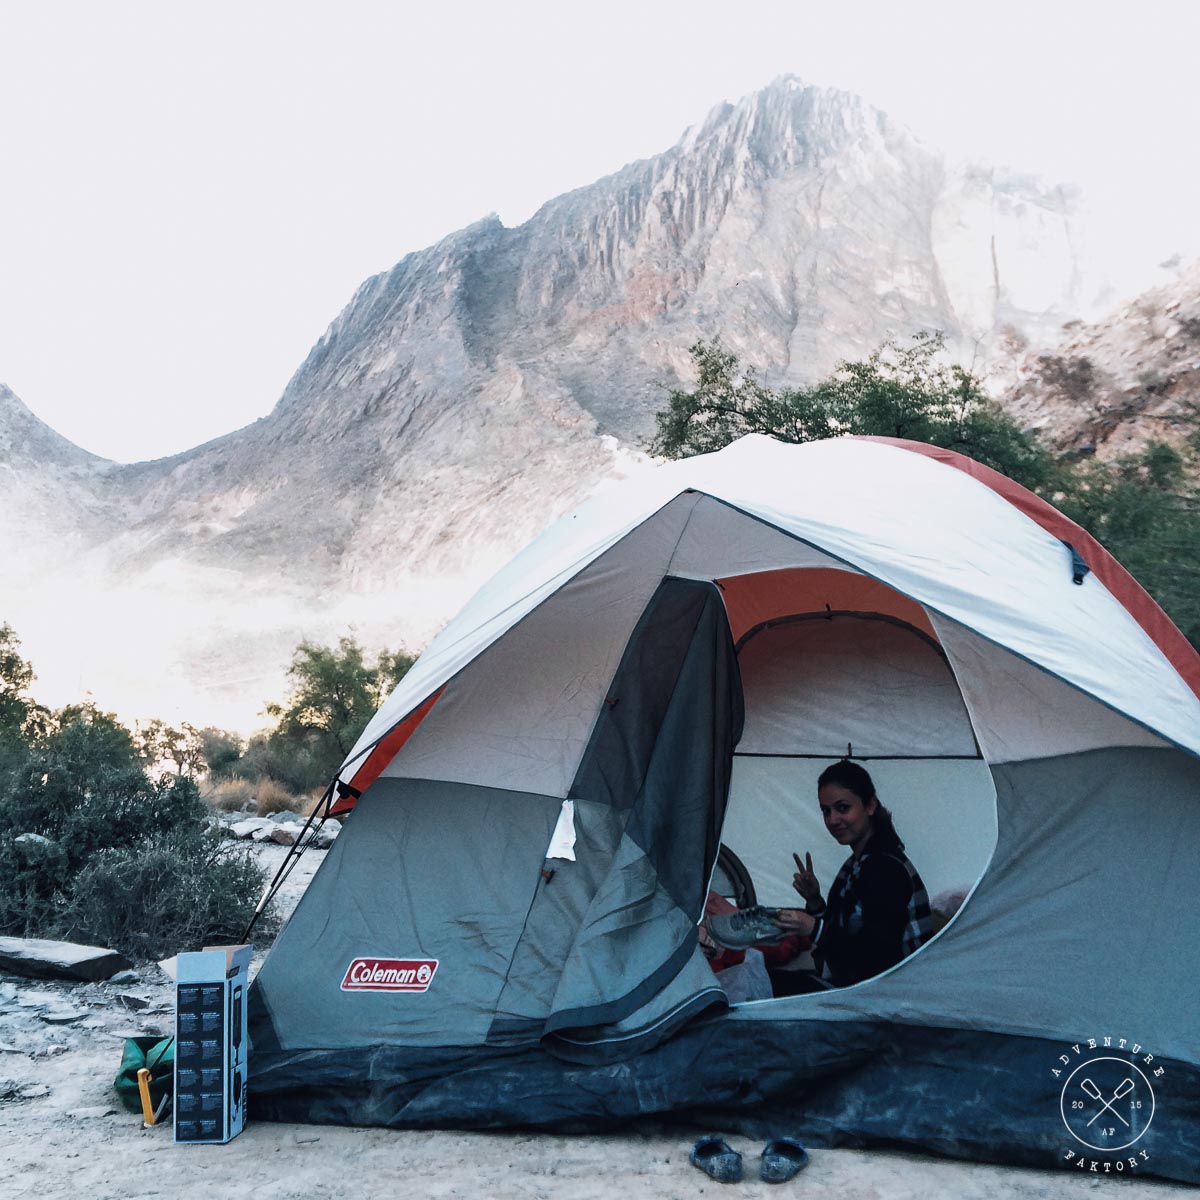 Camping in Jebel Shams, Oman